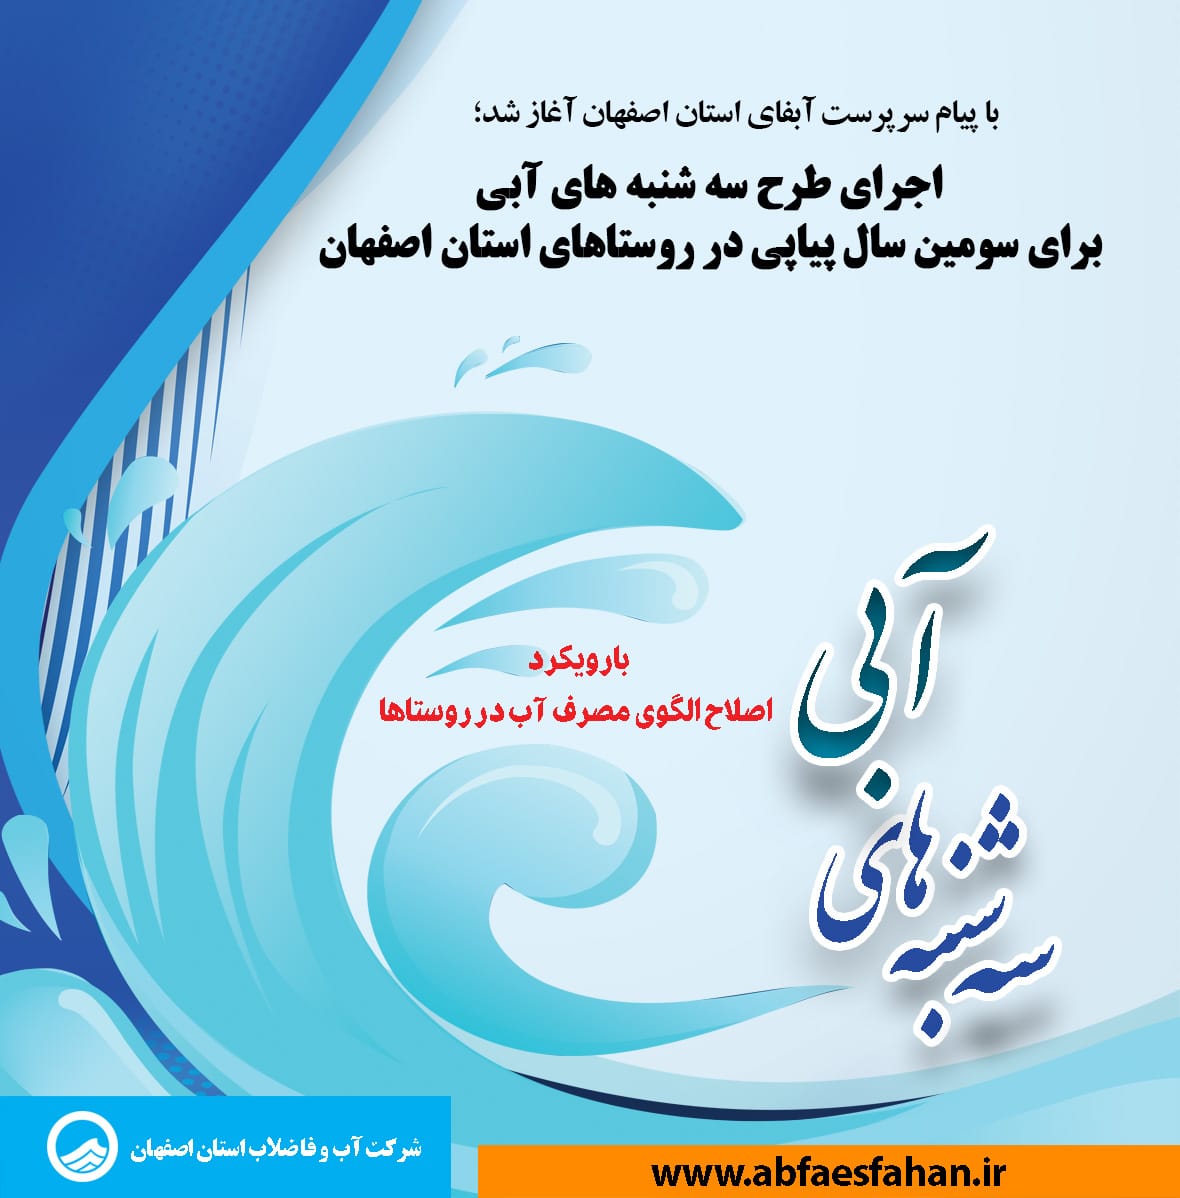 با پیام سرپرست آبفای استان اصفهان آغاز شد؛ اجرای طرح سه شنبه های آبی برای سومین سال پیاپی در روستاهای استان اصفهان